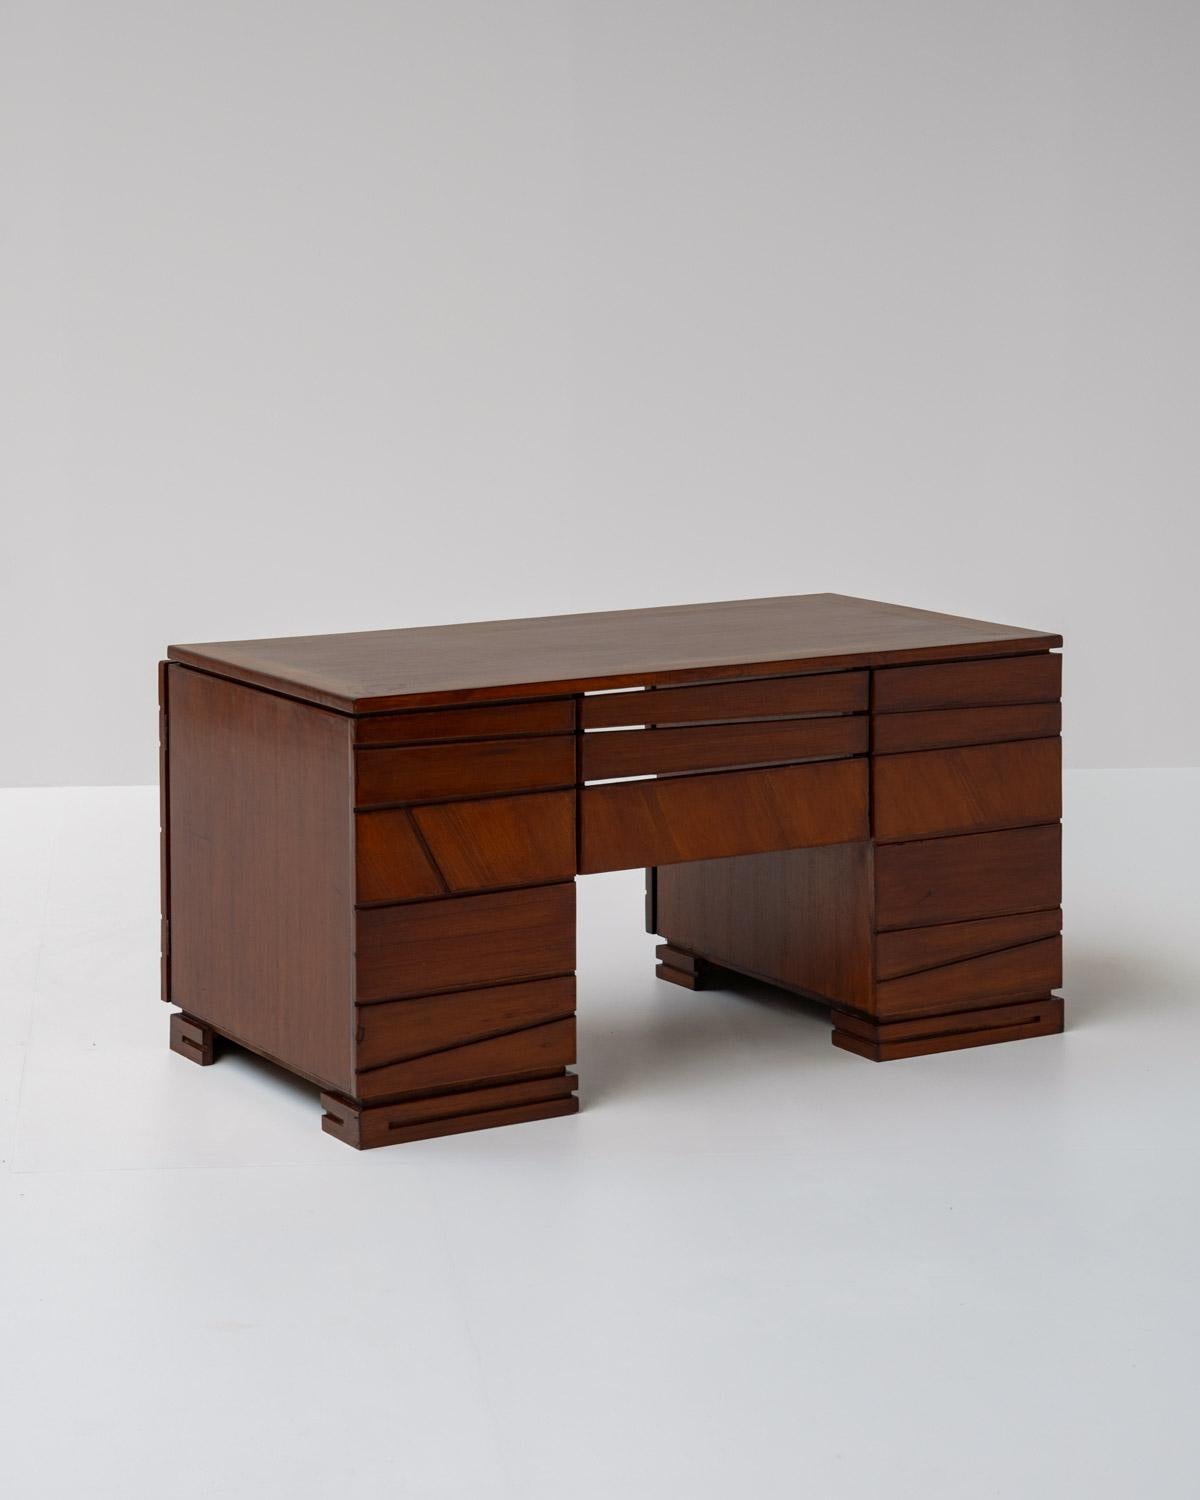 French Wooden Modernist Desk, France 1970s For Sale 5